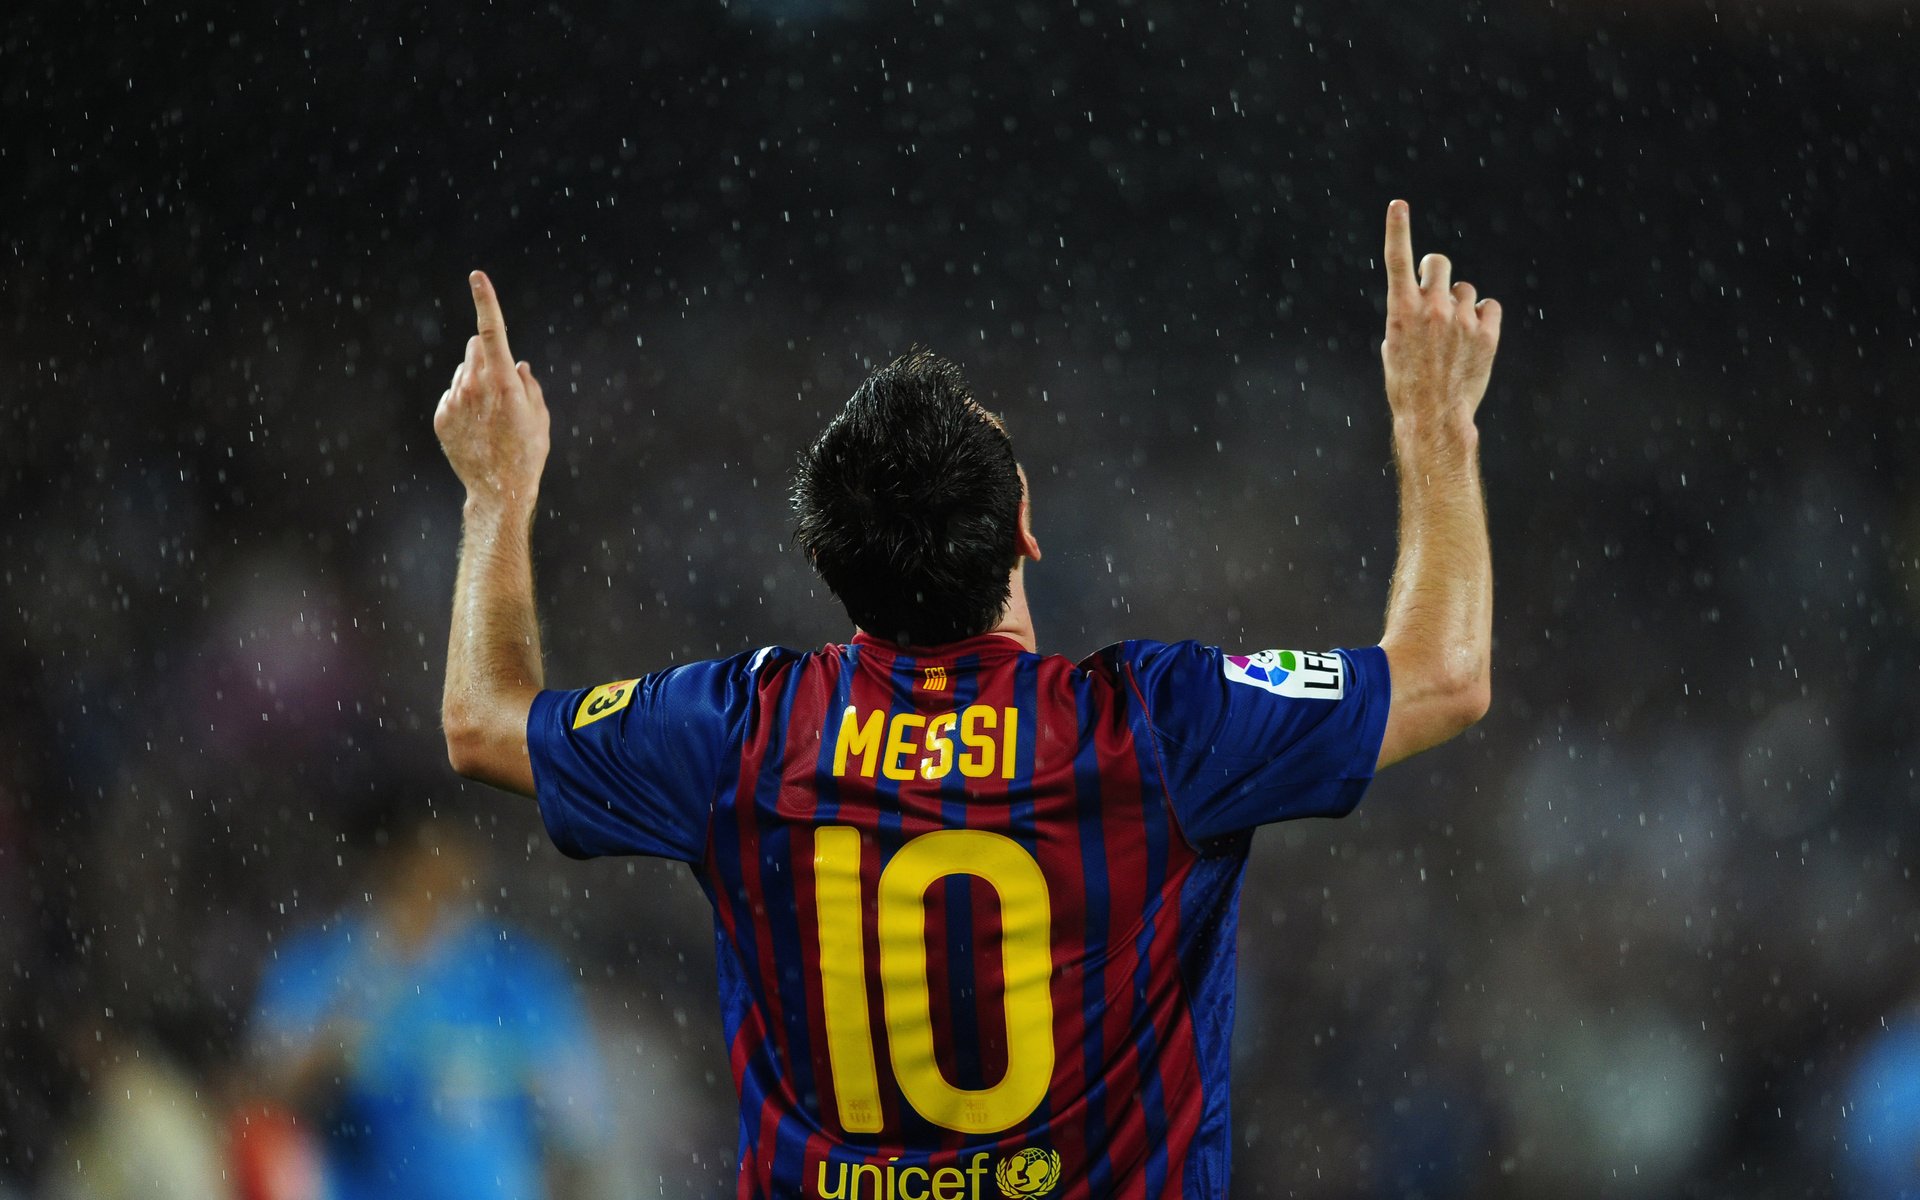 Hình nền Messi đẹp HD: Rực rỡ màu sắc, tươi mới và đầy nghị lực, hình nền Messi HD sẽ khiến cho mọi người đẹp mê hồn. Với độ phân giải cao, những đường nét của cầu thủ huyền thoại này sẽ được tái hiện một cách sinh động và rõ ràng nhất. Hãy cùng chiêm ngưỡng bức tranh siêu đẹp của Messi trên hình nền HD!